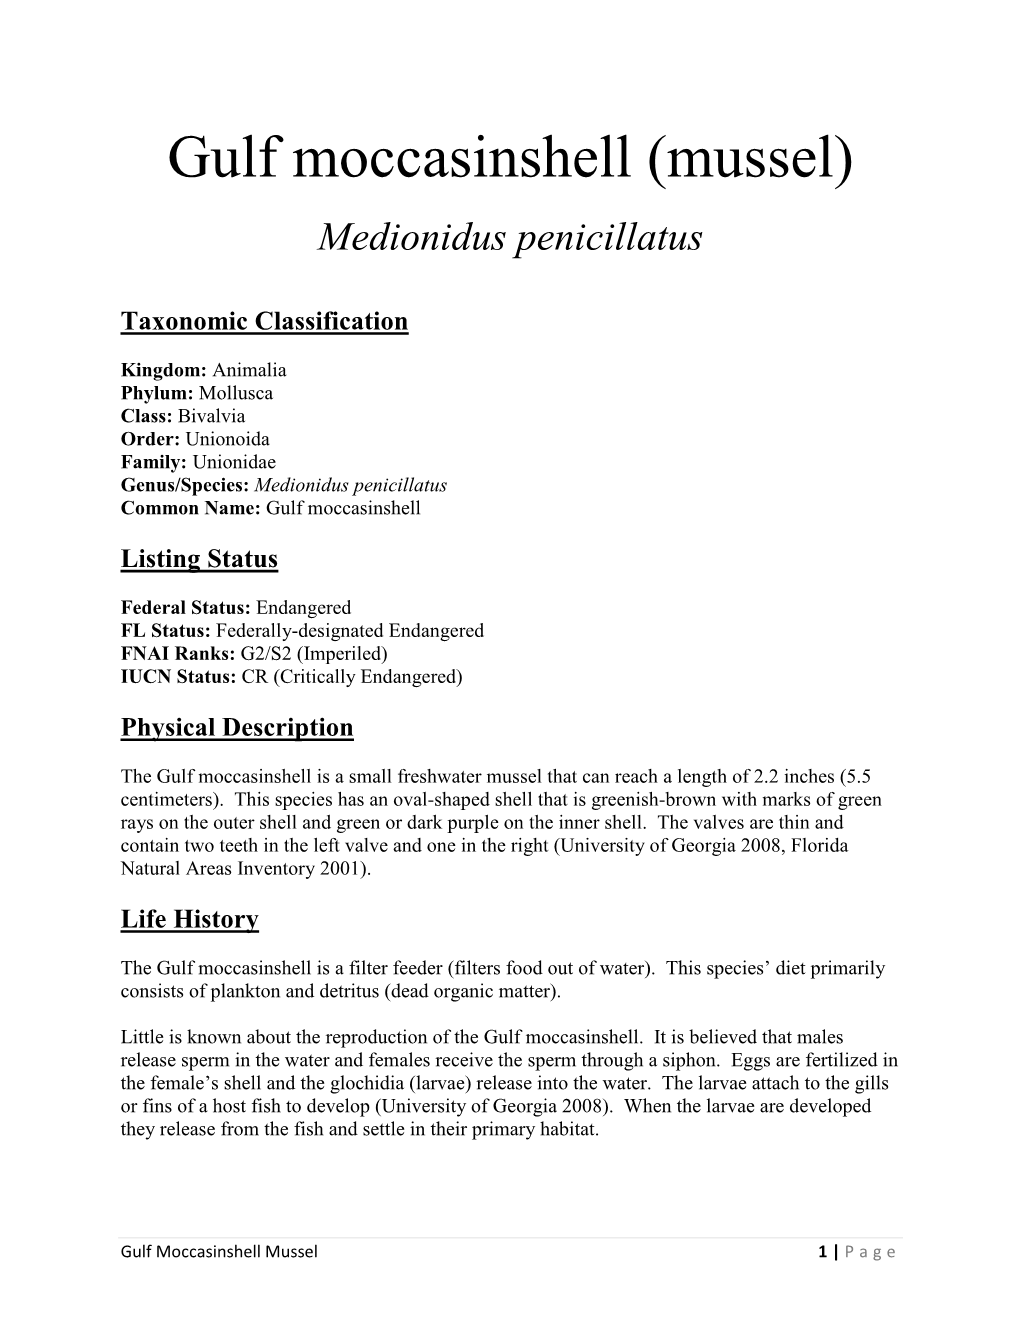 Gulf Moccasinshell (Mussel)